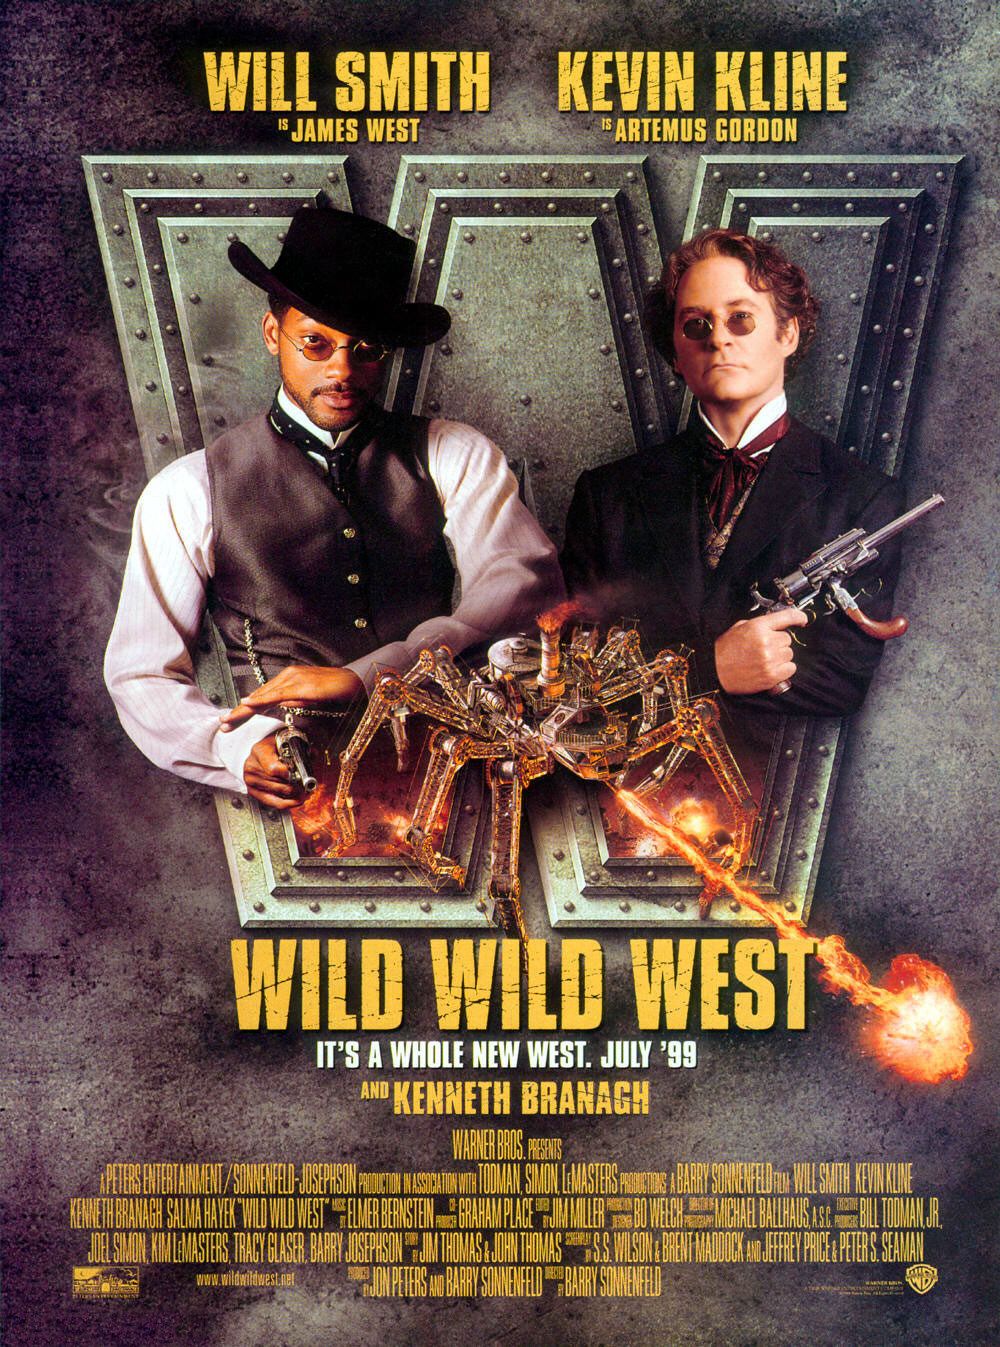 Wild Wild West Warner Bros image